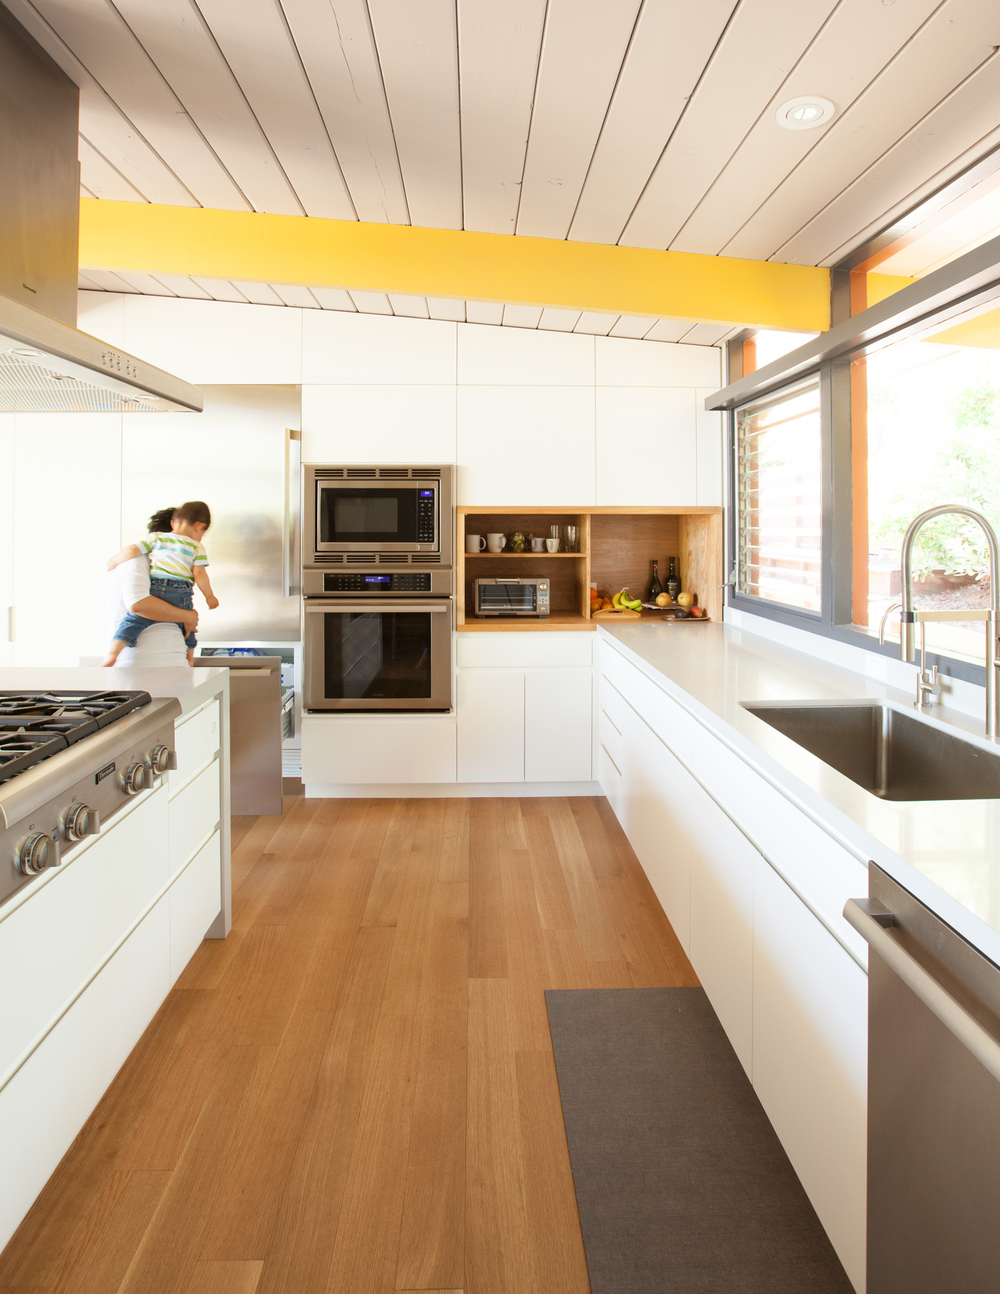 kitchen // Sunset House by Sky Lanigan for Medium Plenty 